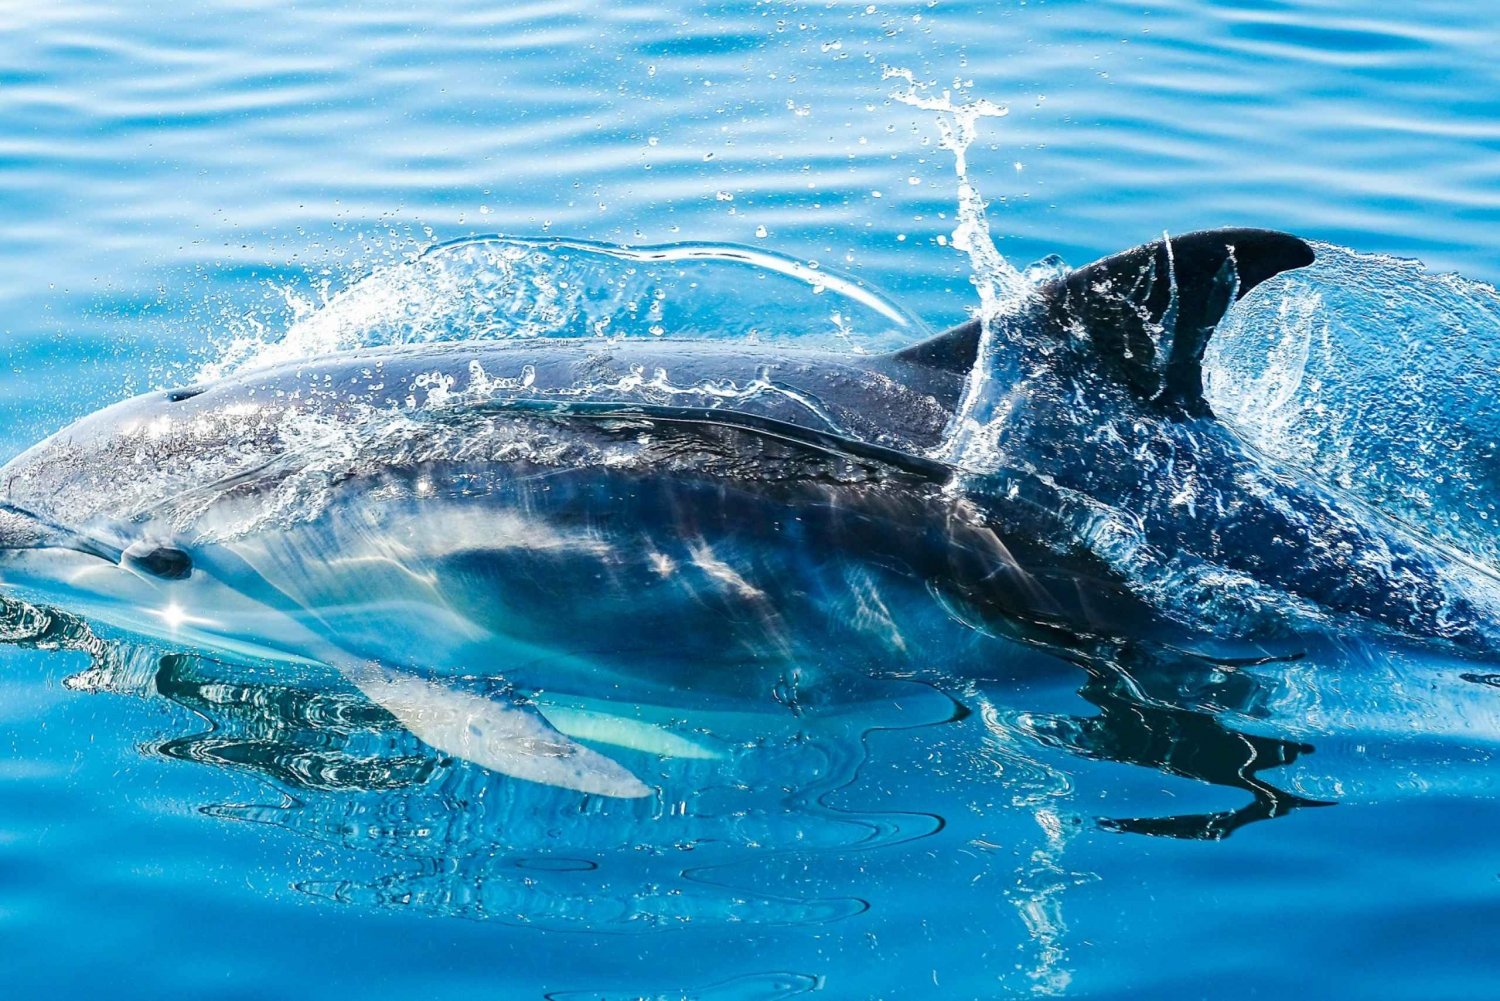 Depuis Malaga : Excursion d'une journée à Gibraltar et excursion en bateau à la rencontre des dauphins